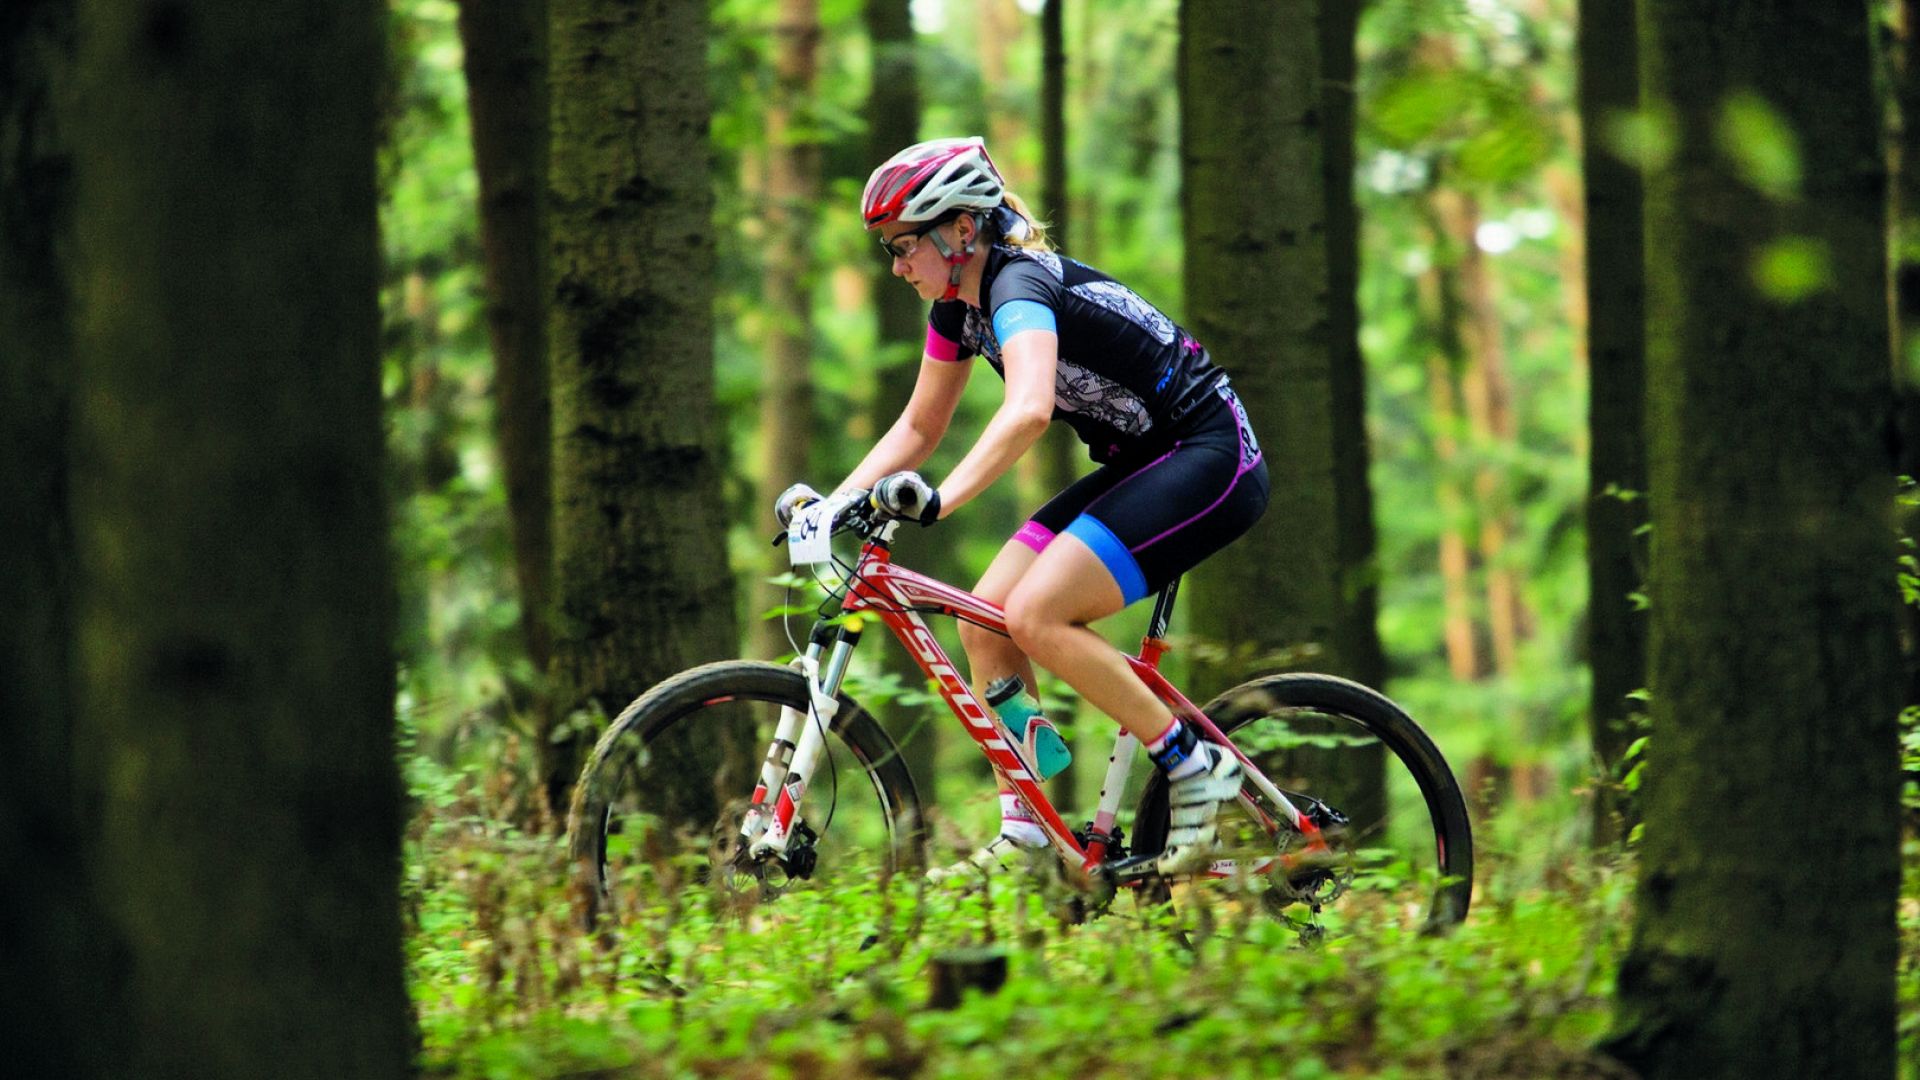 Kobieta w profesjonalnym stroju kolarskim pokonuje na rowerze leśną trasę terenową. Do kierownicy ma przypięty numer startowy. Wokół drzewa.